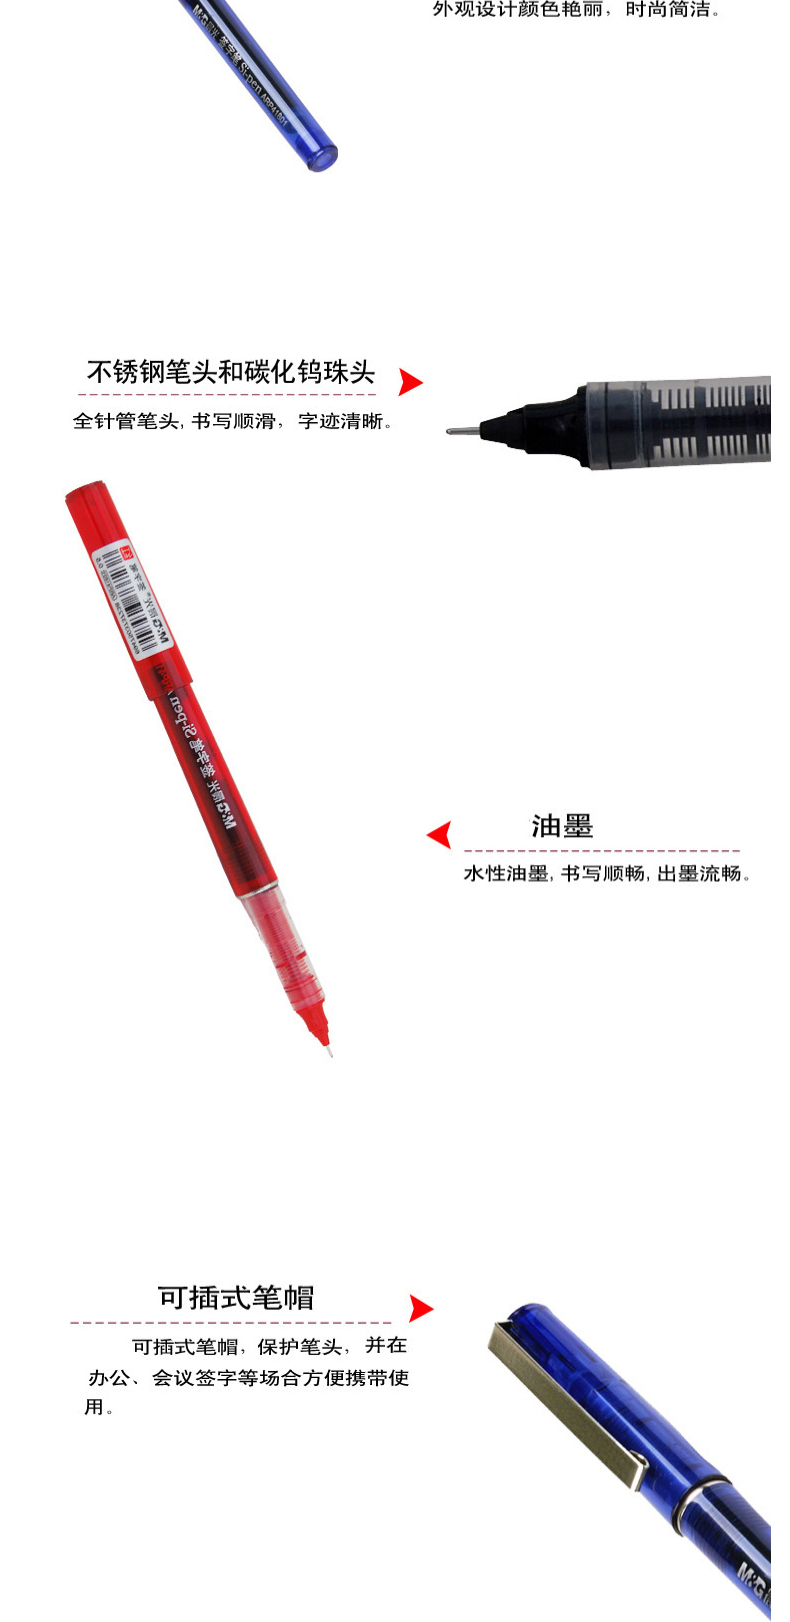 晨光 M＆G 签字笔 ARP41801 0.5mm (蓝色) 12支/盒